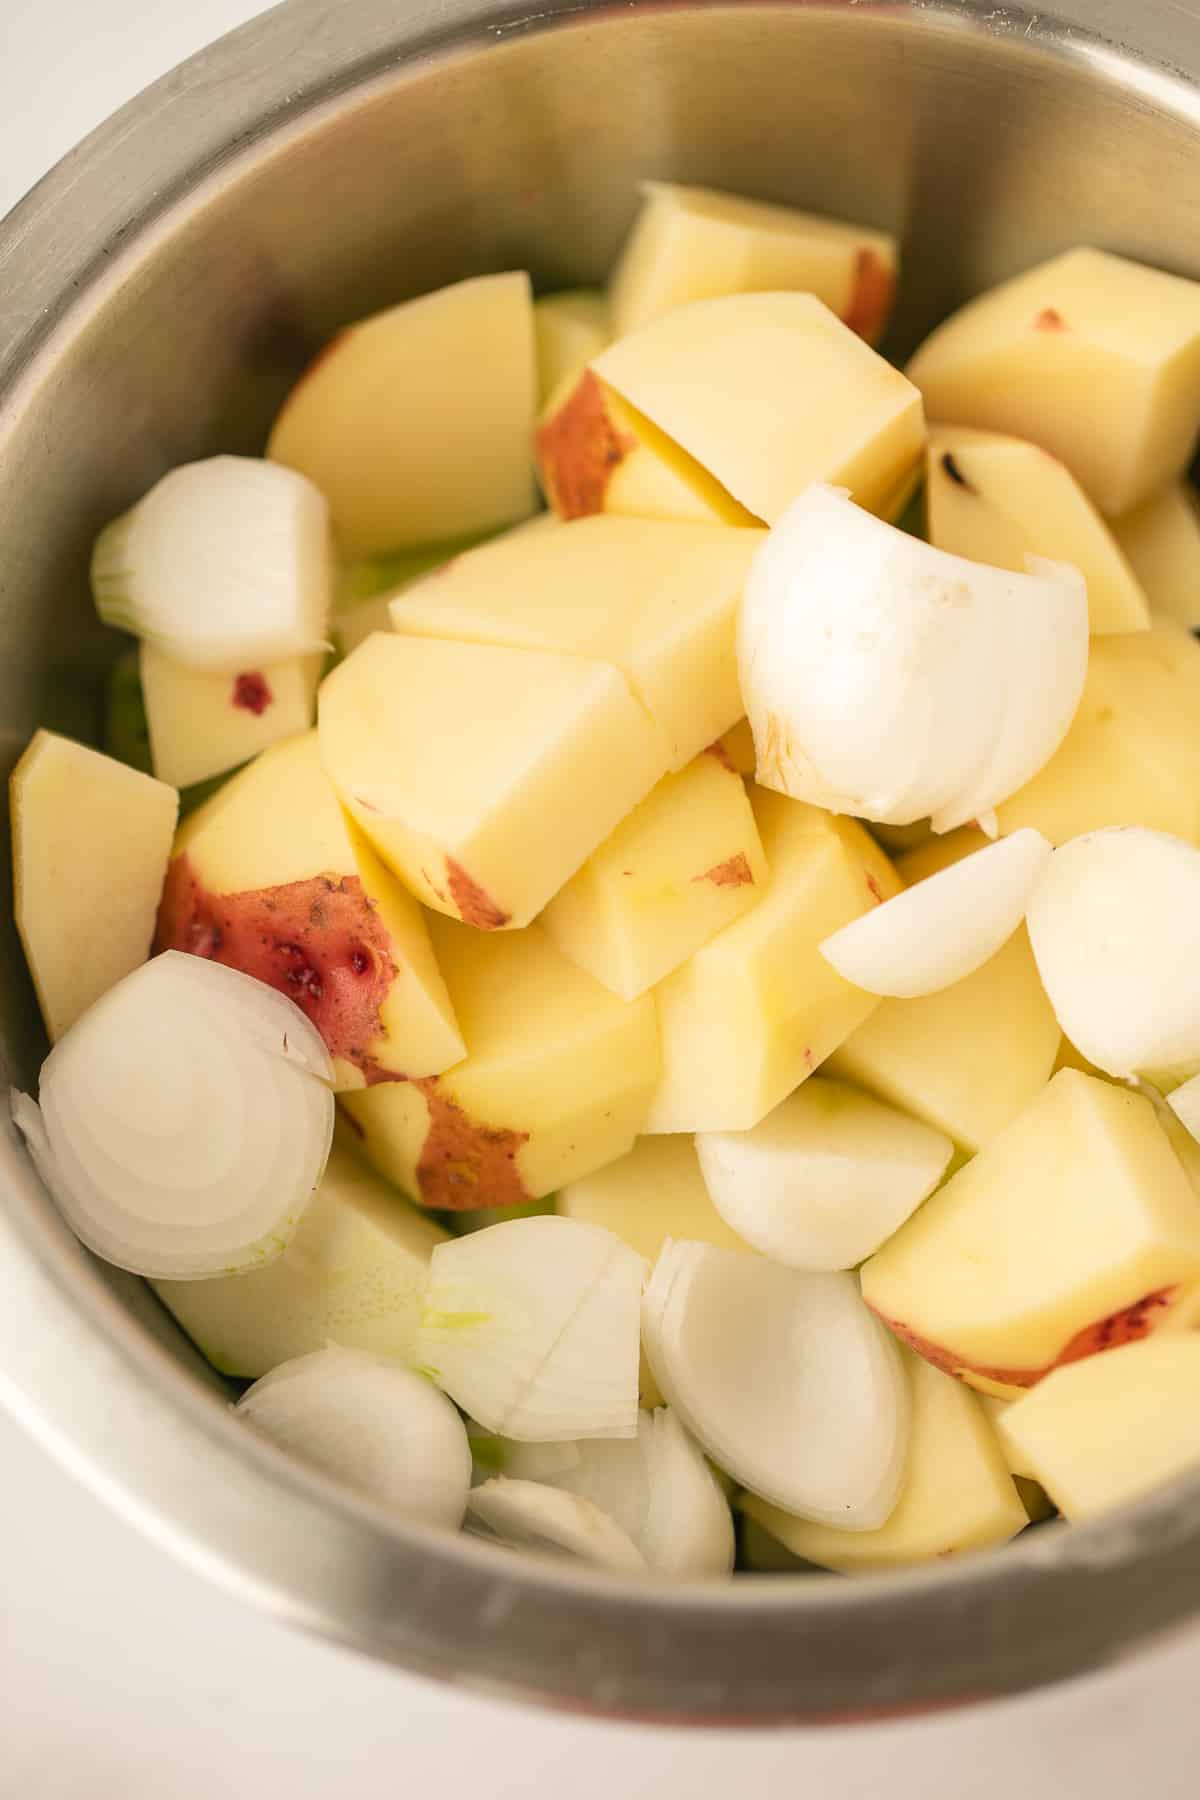 chopped potato and onion